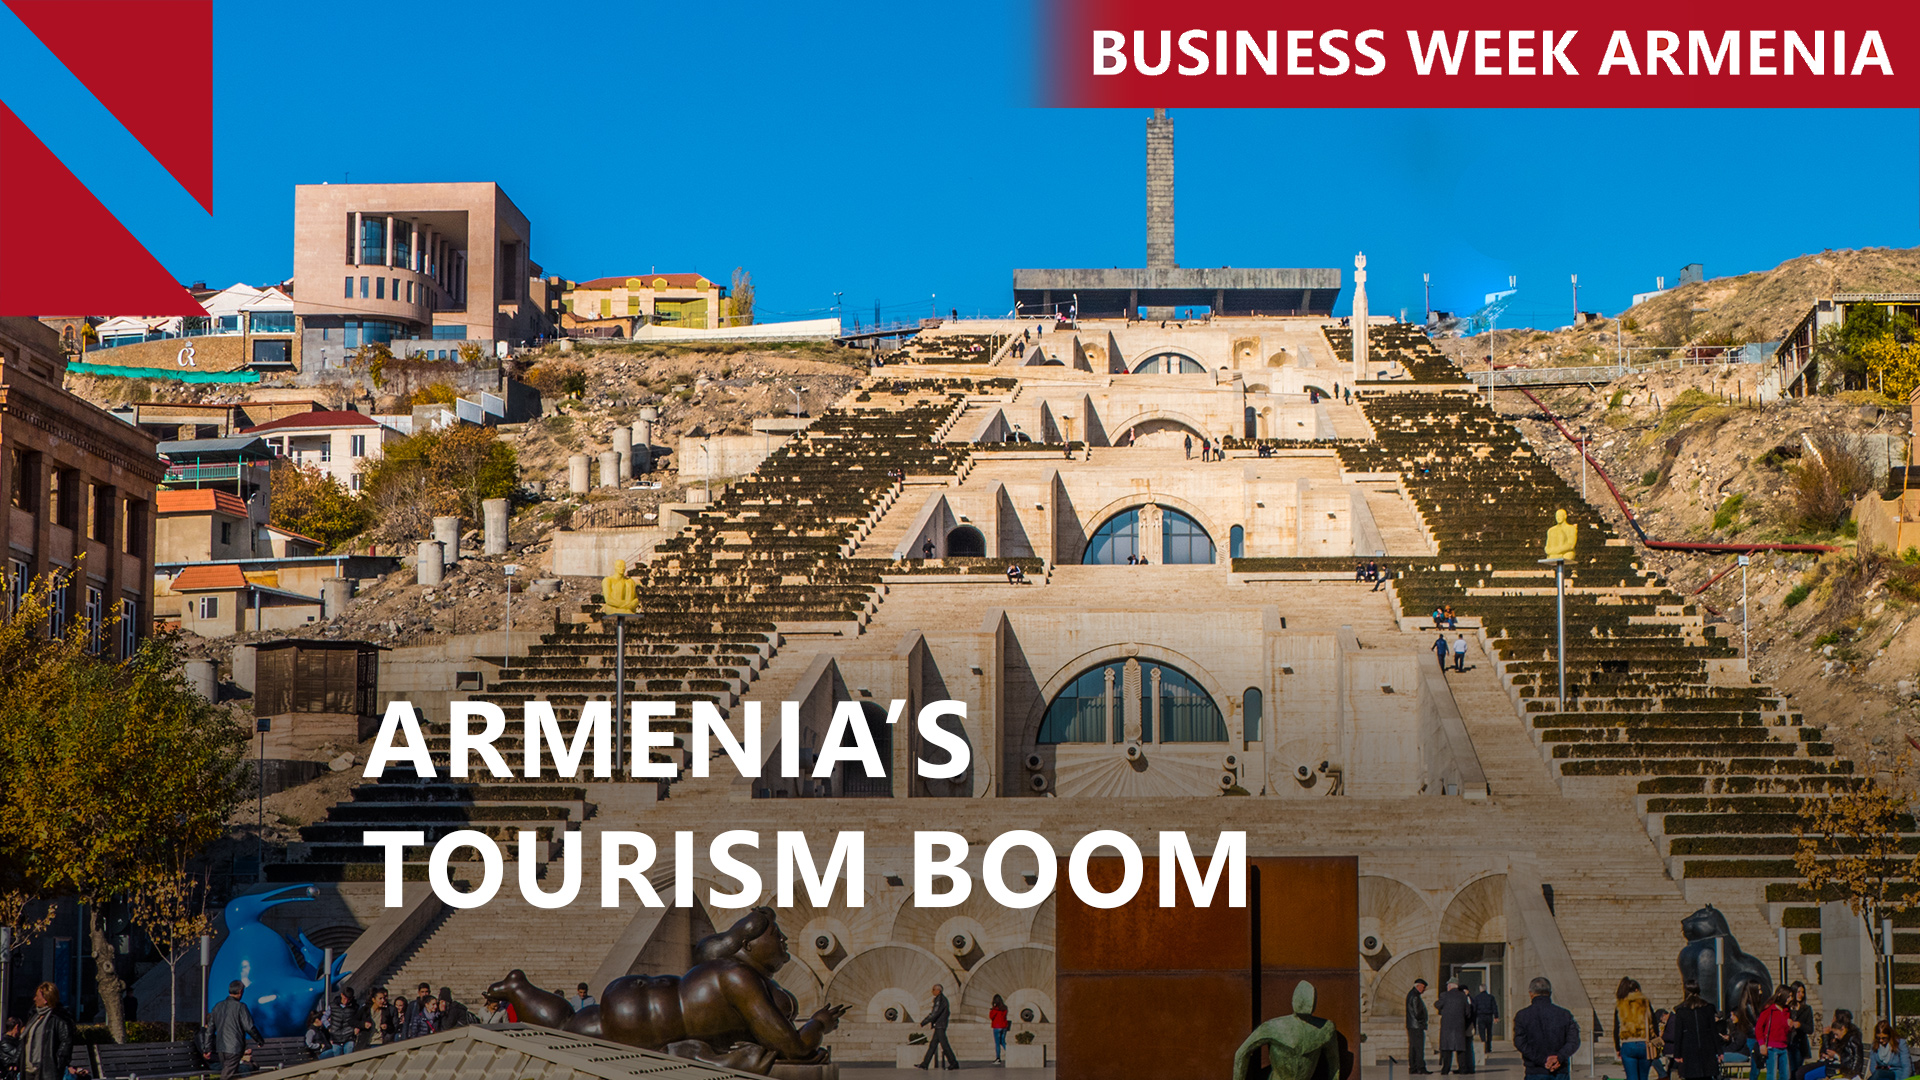 ARMENIA’S TOURISM BOOM